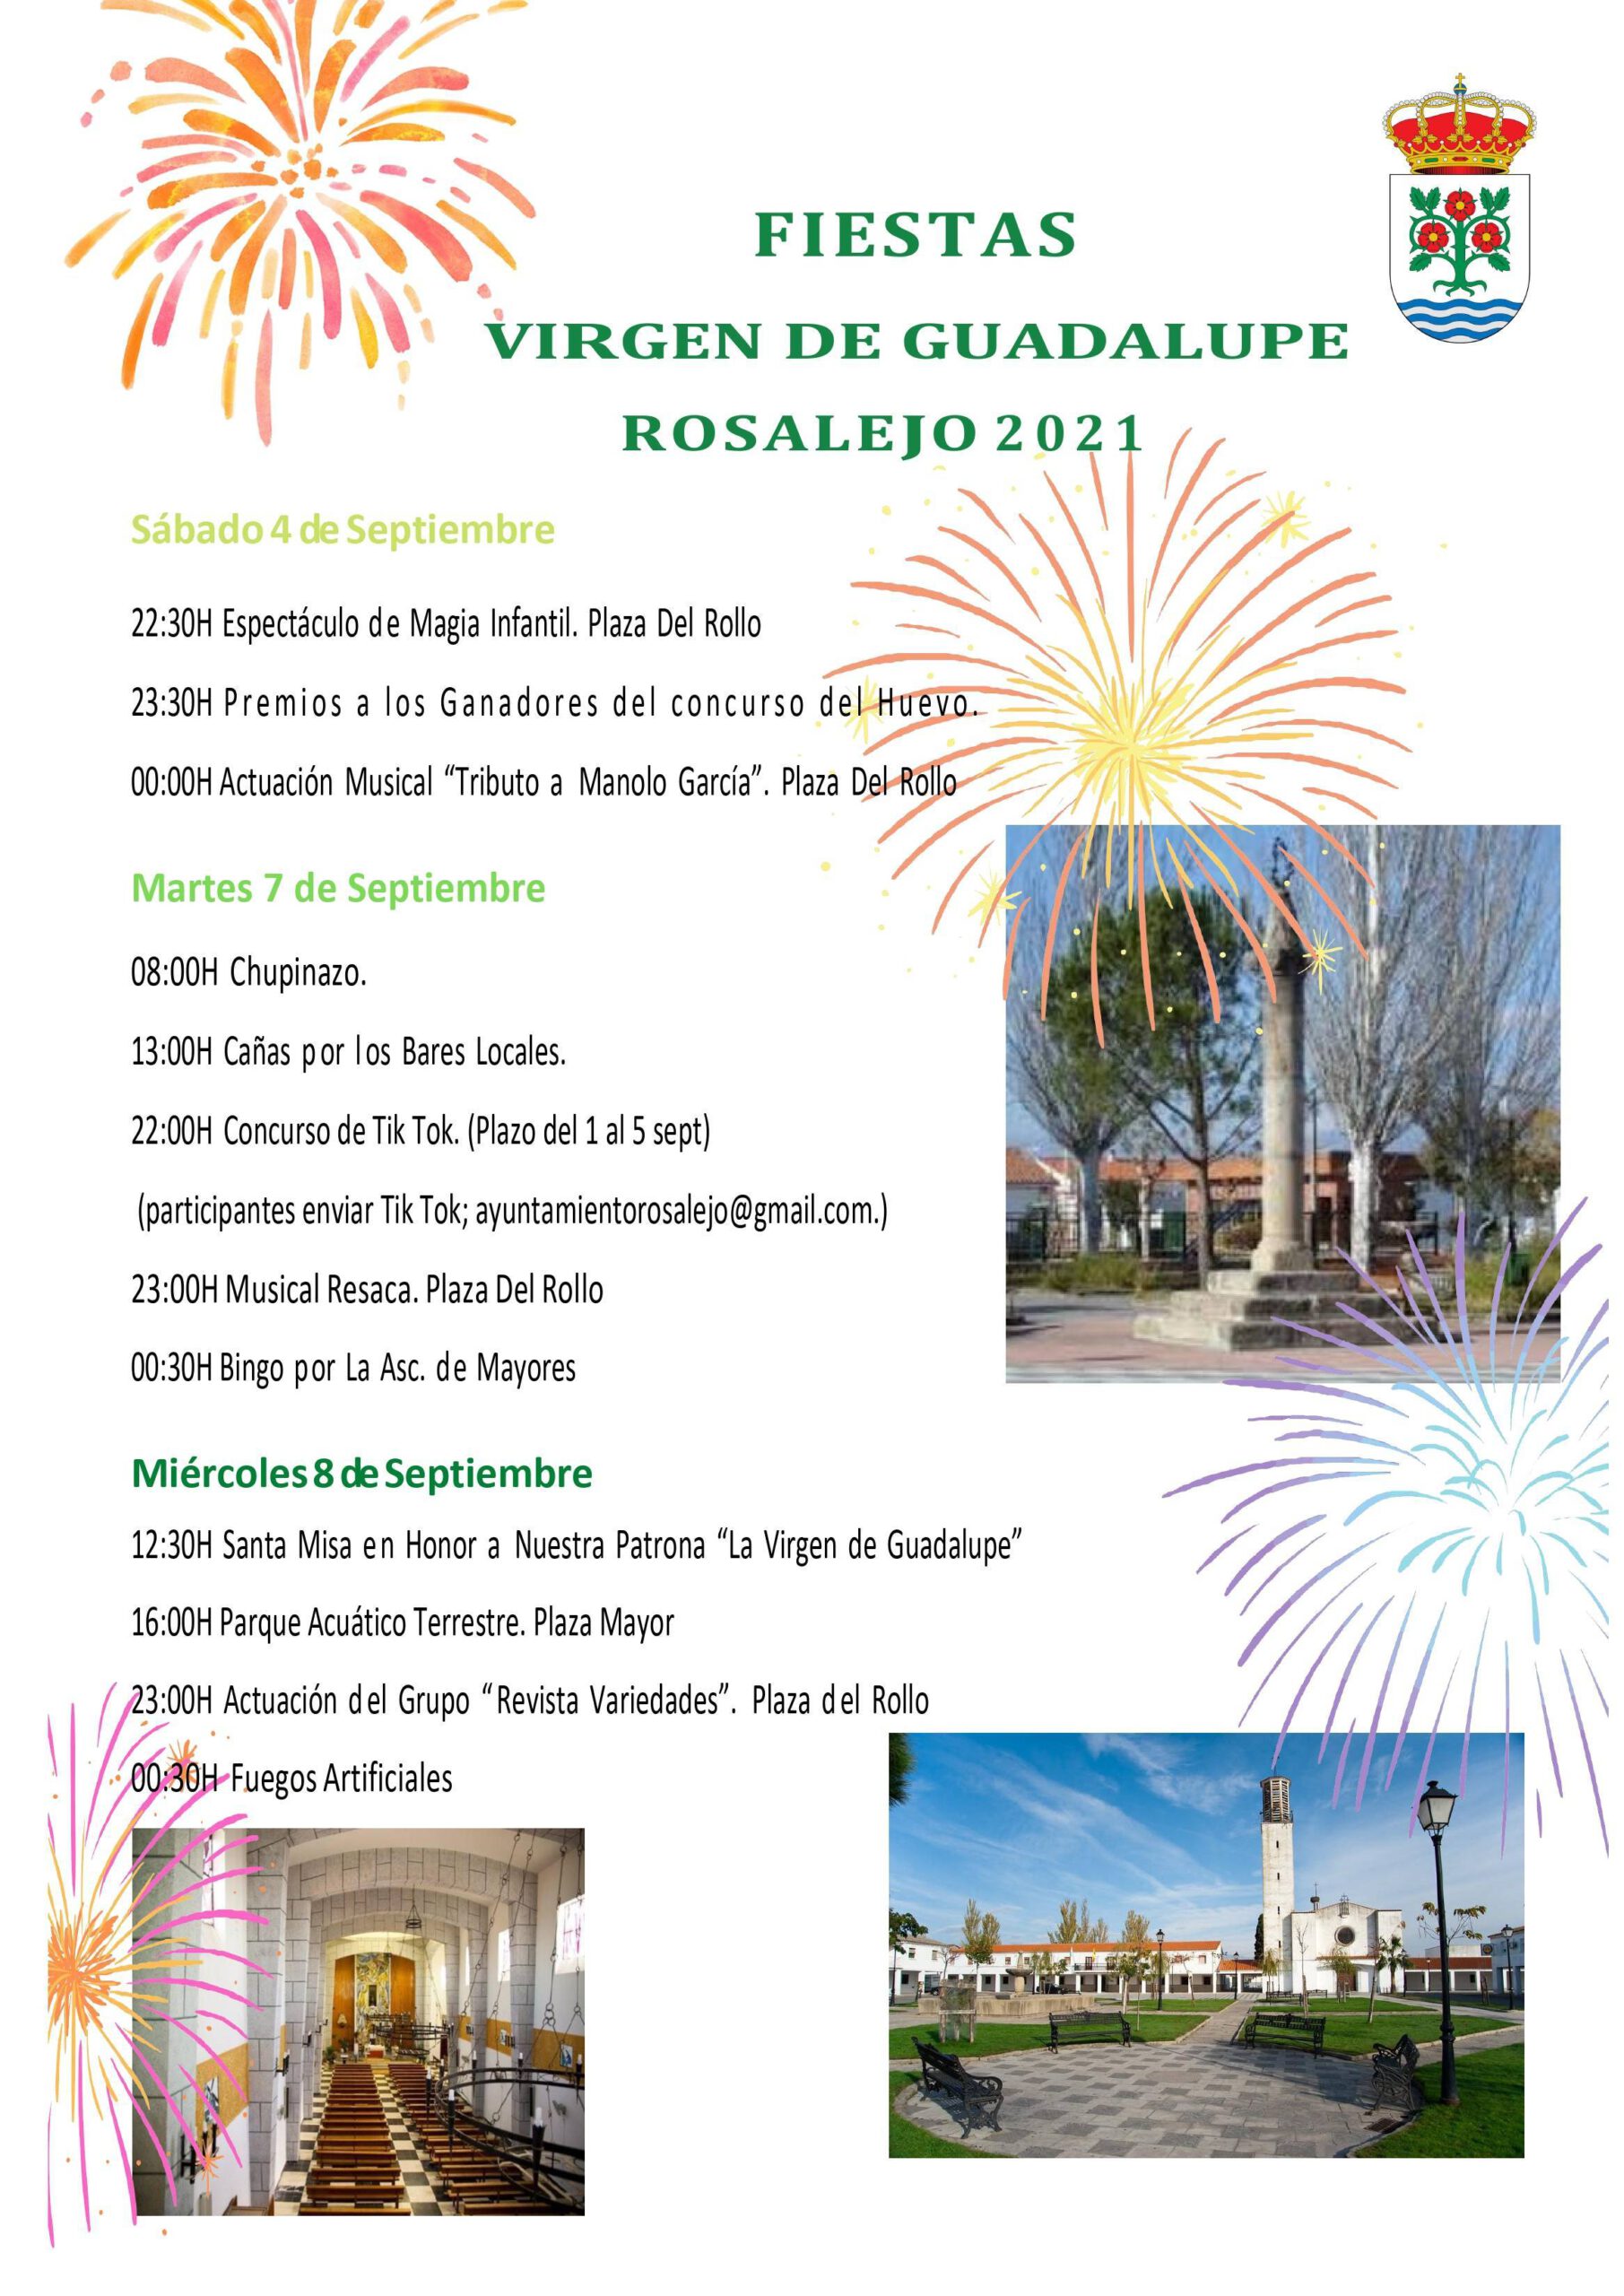 Fiestas de la Virgen de Guadalupe (2021) - Rosalejo (Cáceres)